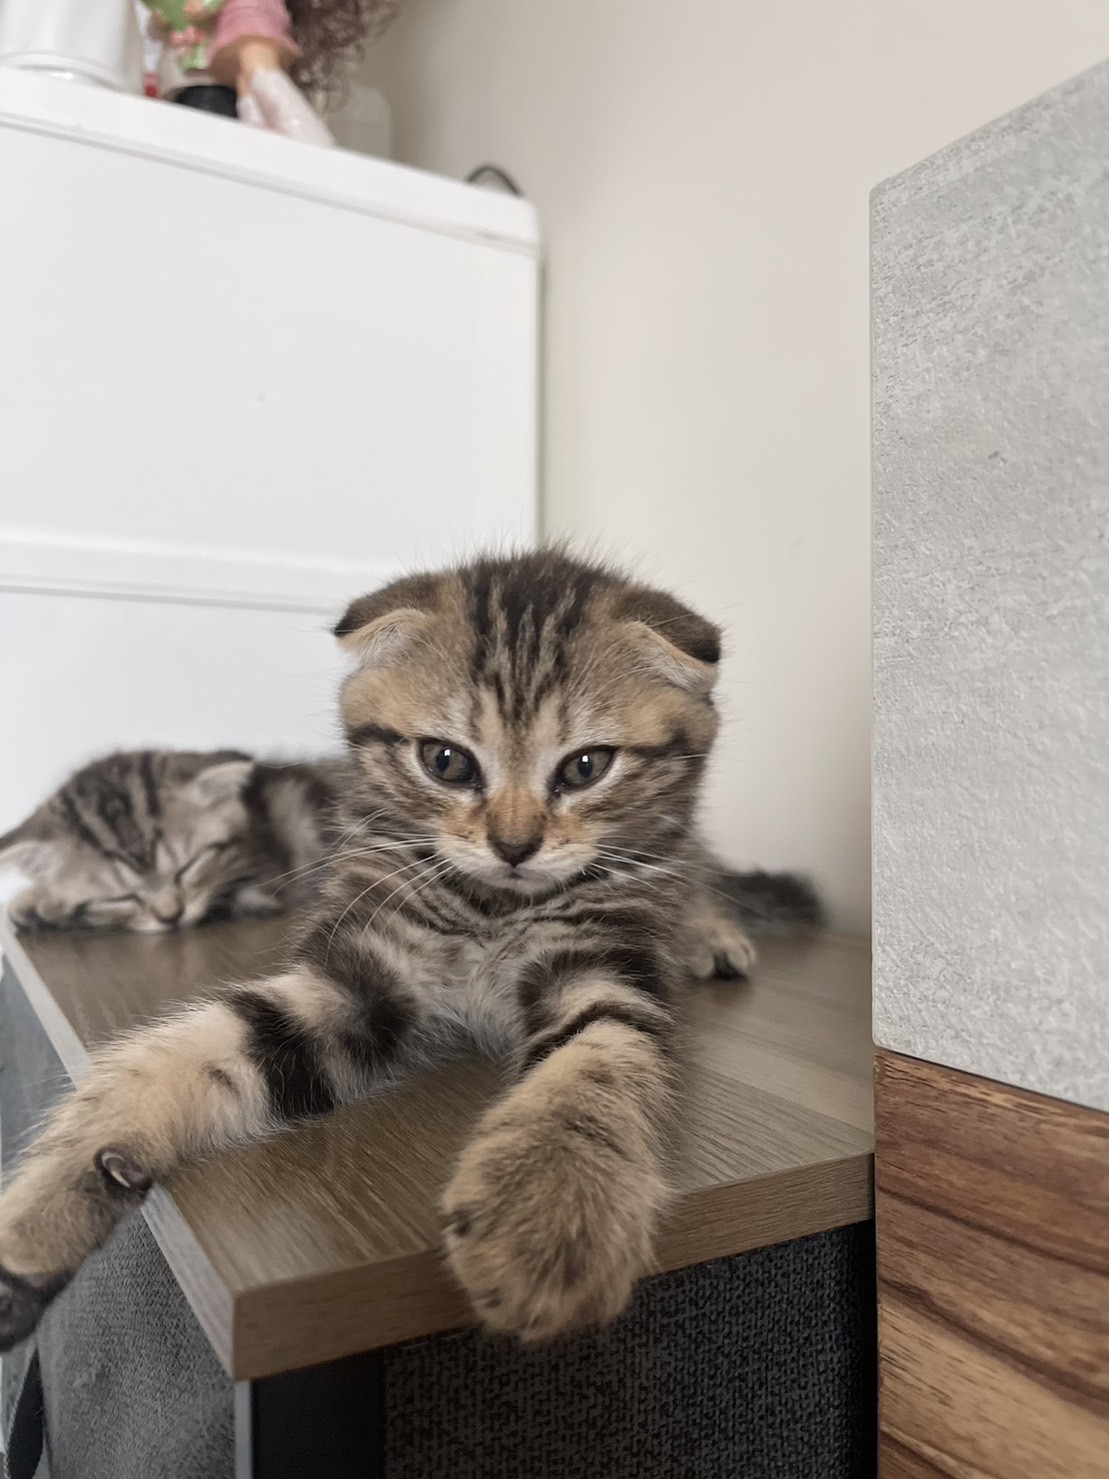 ขายน้องแมว สก็อตติสโฟล์ หูพับ เพสชาย 2 ตัว อายุ 3 เดือน รูปที่ 1